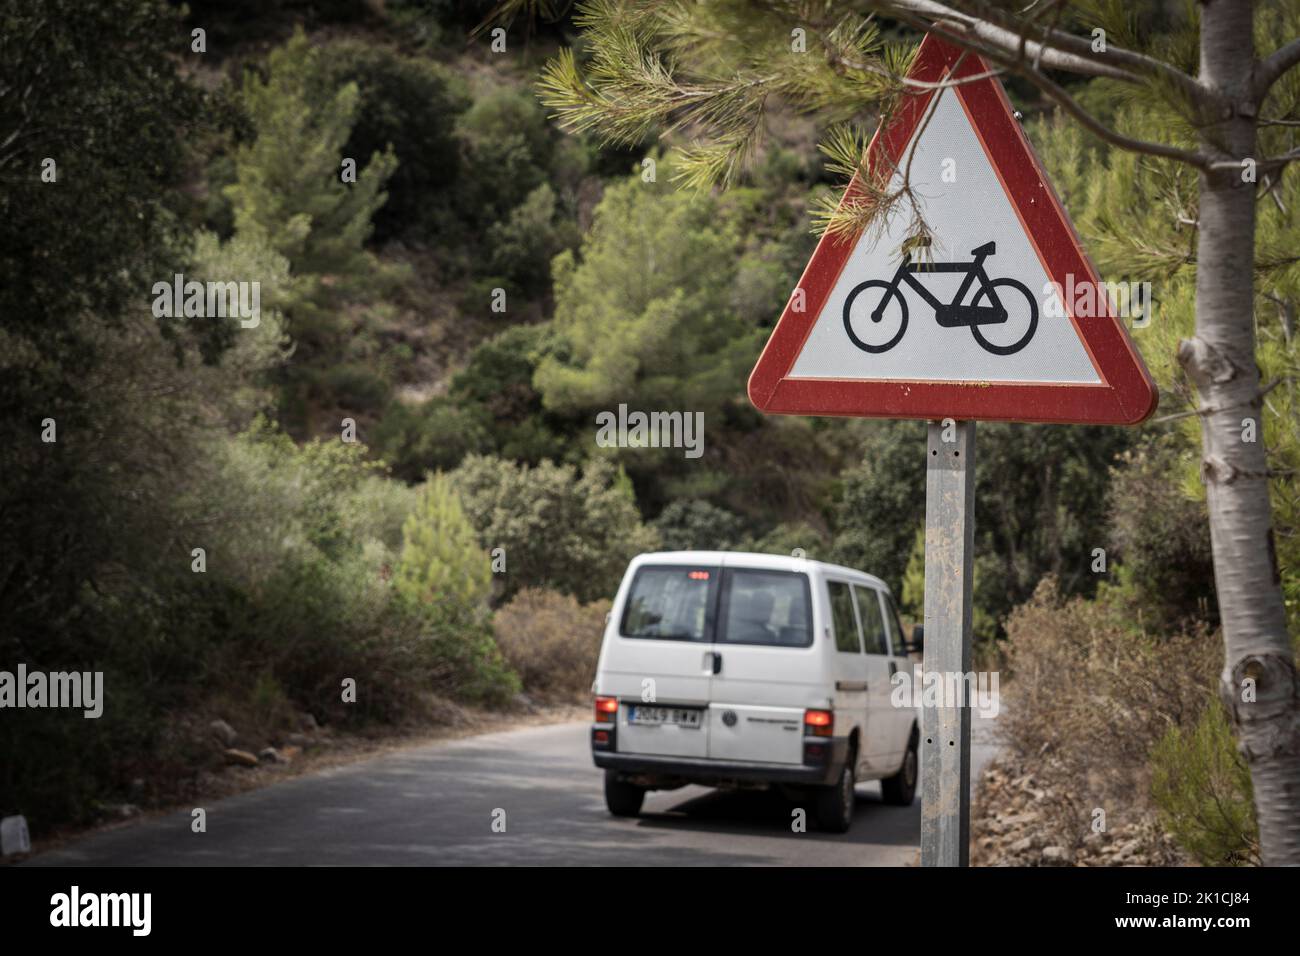 Señal de alerta de tráfico para la presencia de ciclistas P-22, Randa, Mallorca, Islas Baleares, España Foto de stock